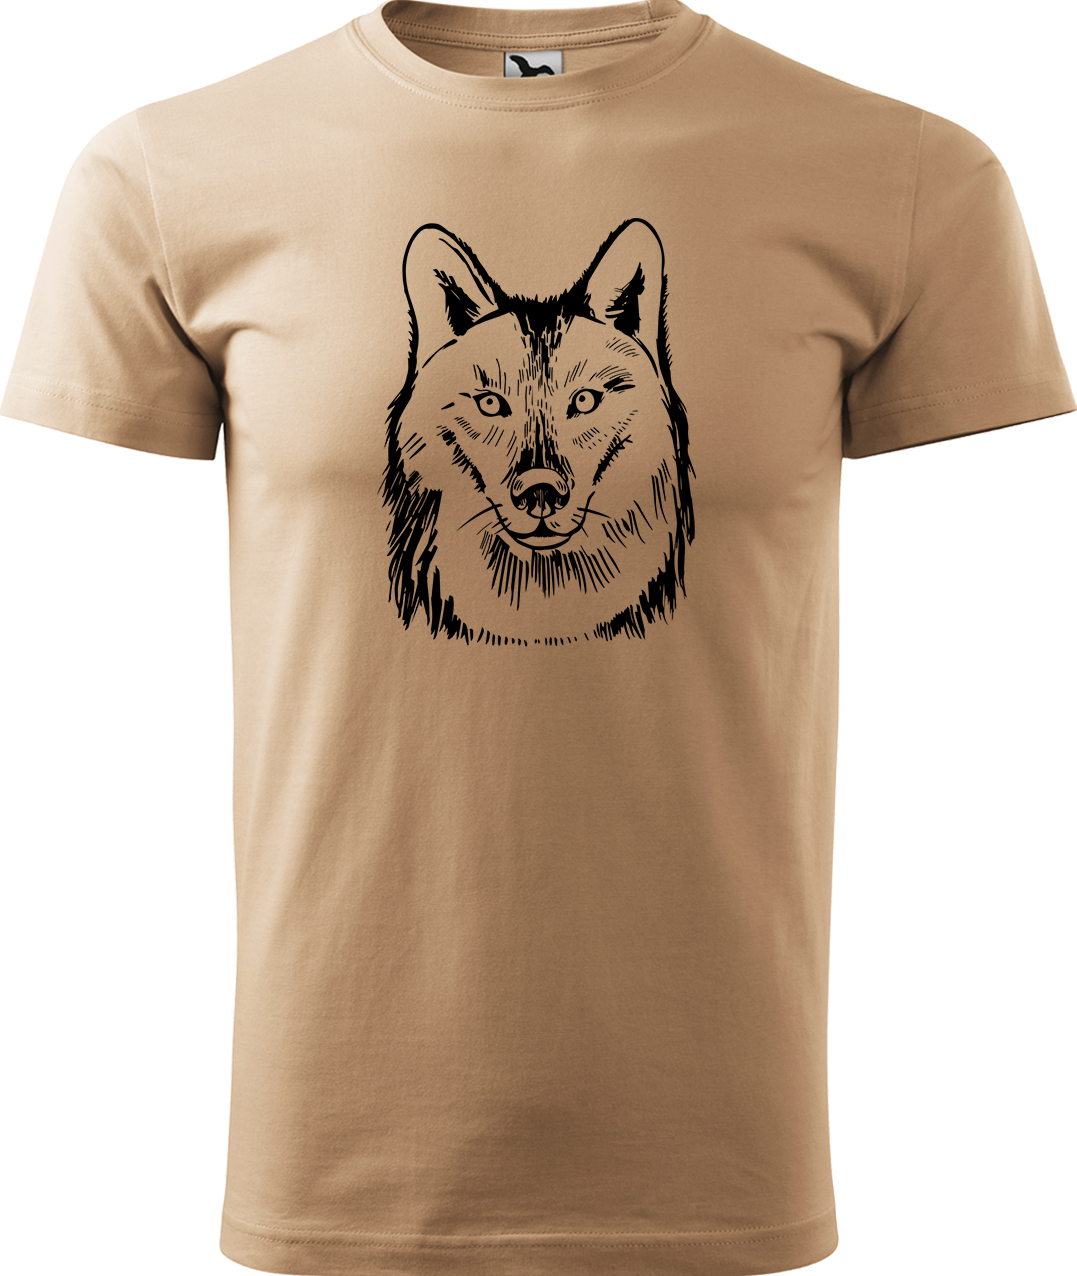 Pánské tričko s vlkem - Kresba vlka Velikost: L, Barva: Písková (08), Střih: pánský